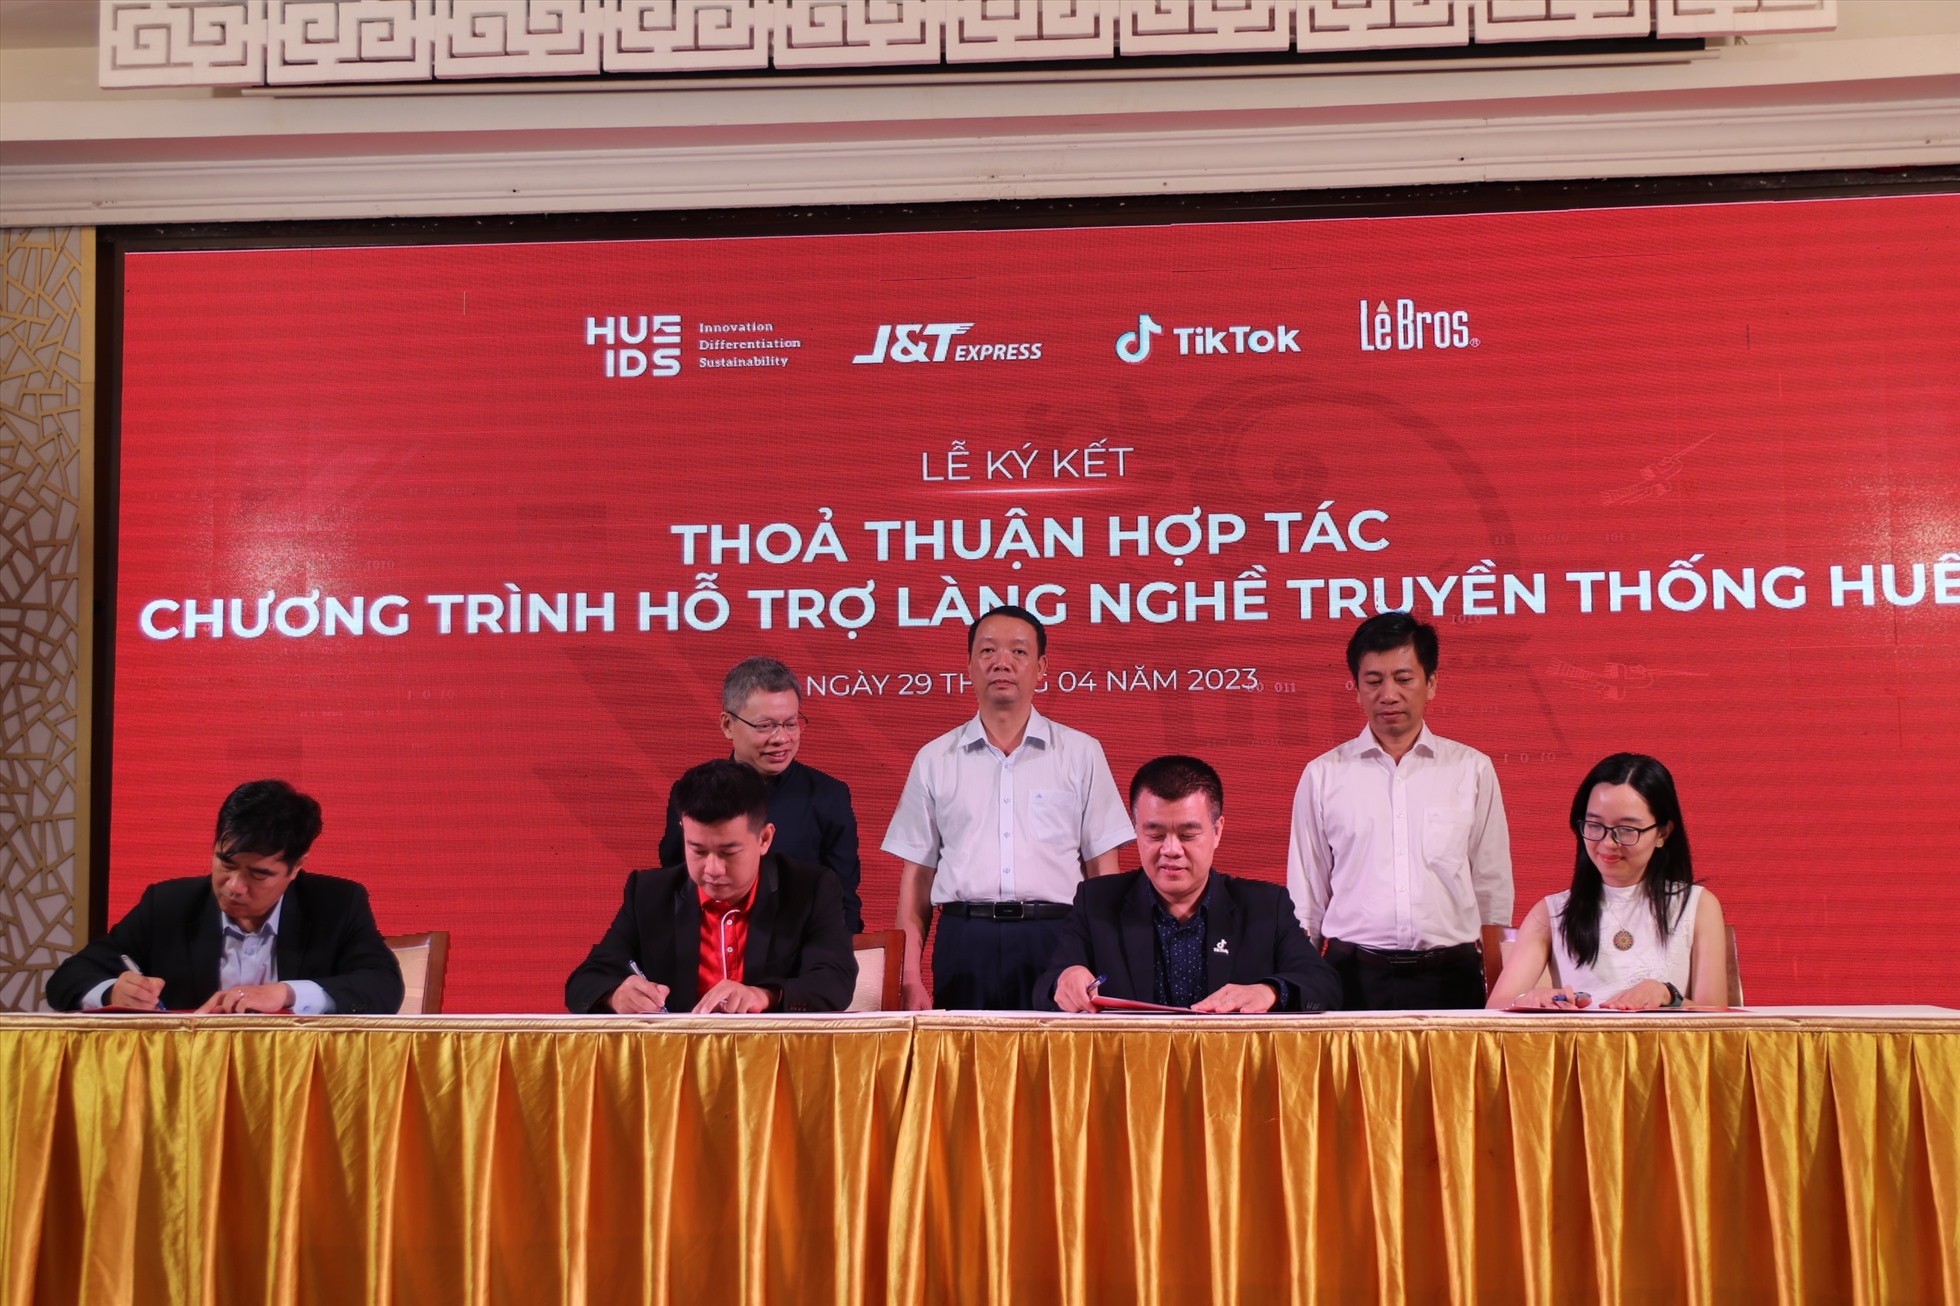 Lễ ký kết liên minh hợp tác giữa 04 bên gồm: Viện Nghiên cứu phát triển Huế (Huế IDS), Tập đoàn truyền thông Lê, Công ty TNHH J&T Express Việt Nam và Công ty TNHH Công nghệ TikTok Việt Nam.